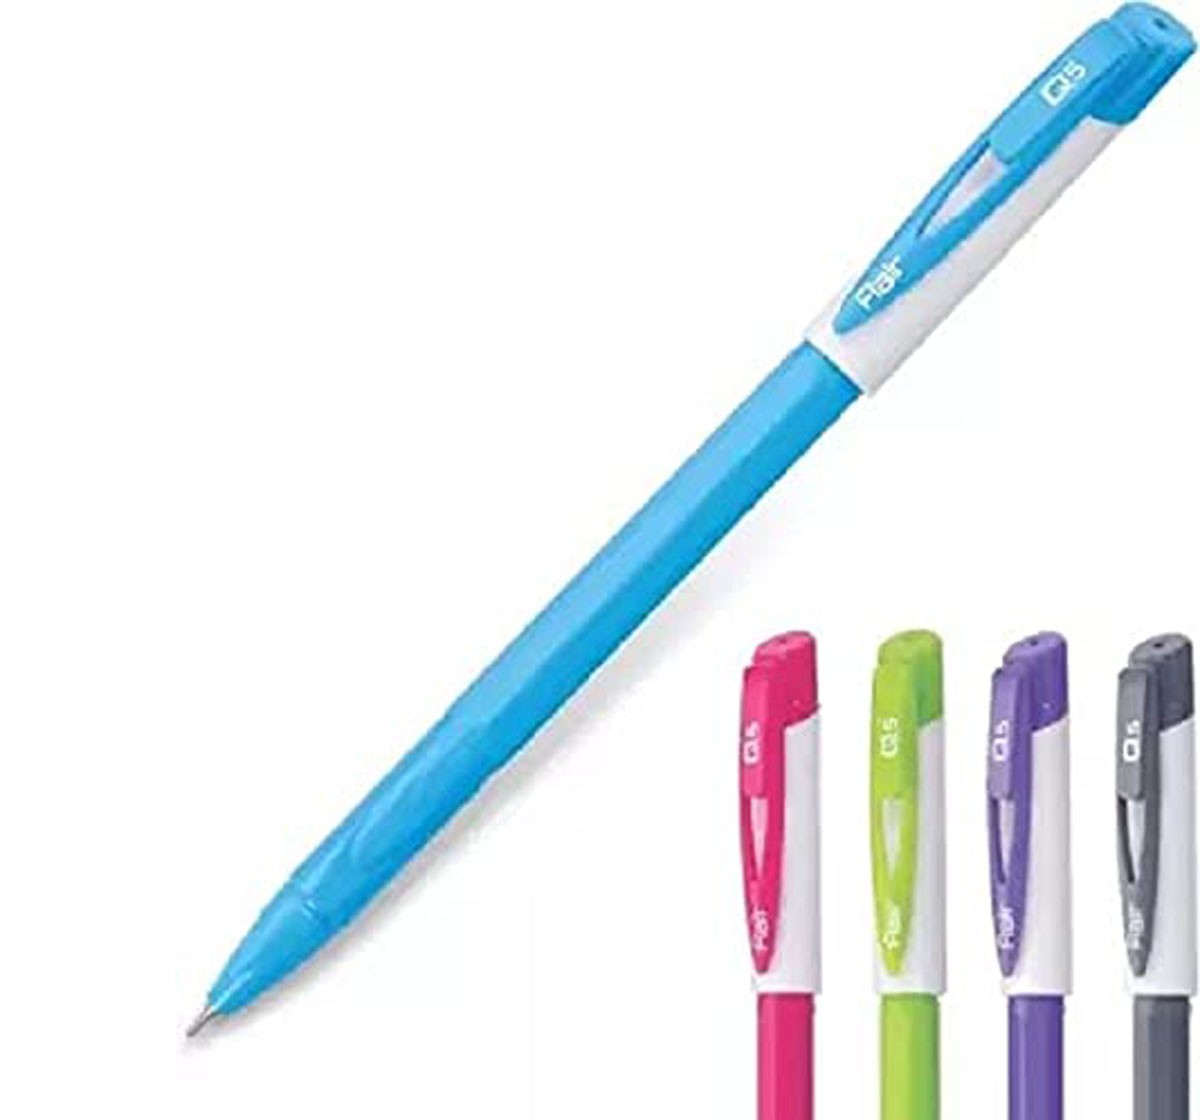 Flair Q5 Ball Pen 25 Pieces Multicolor 12Y+